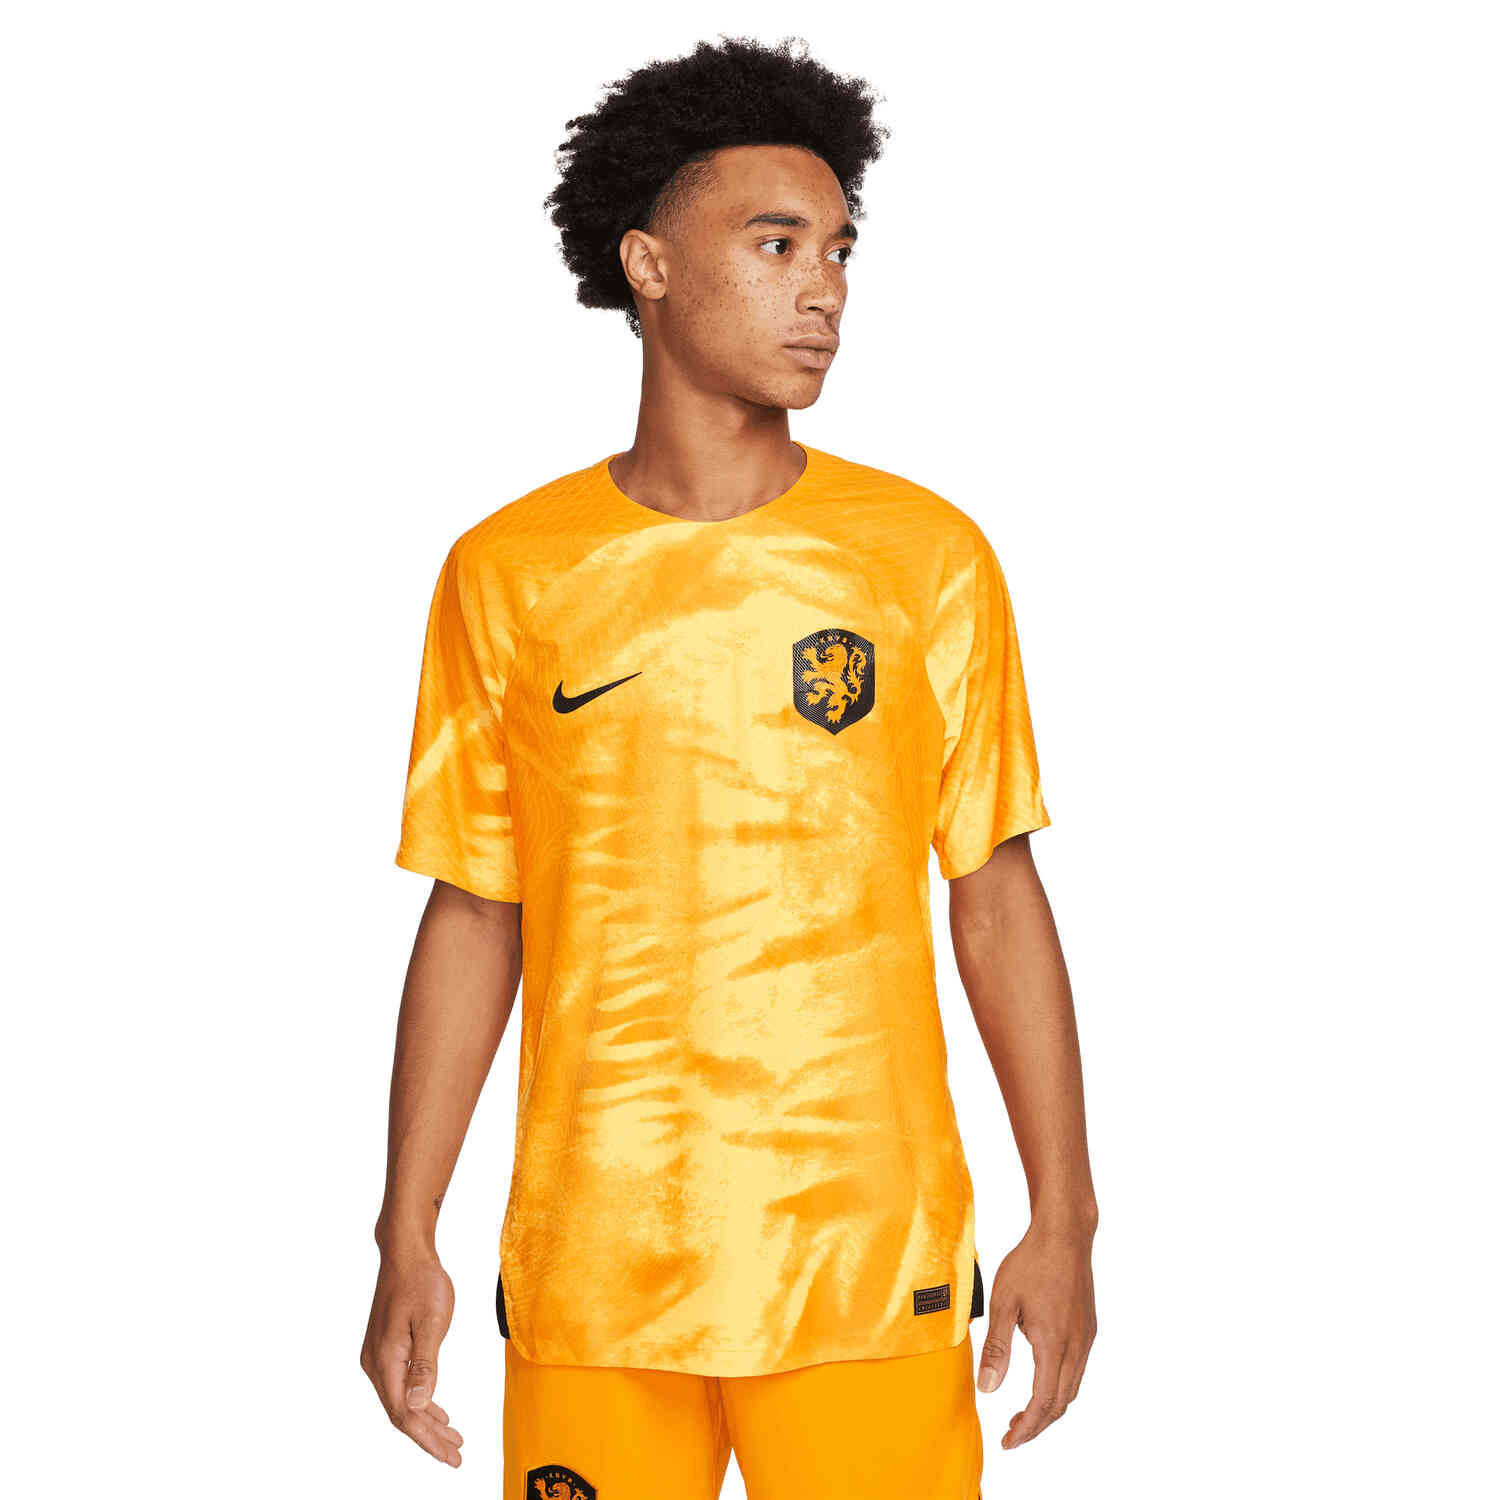 2022 Nike Netherlands Home Match Jersey - SoccerPro